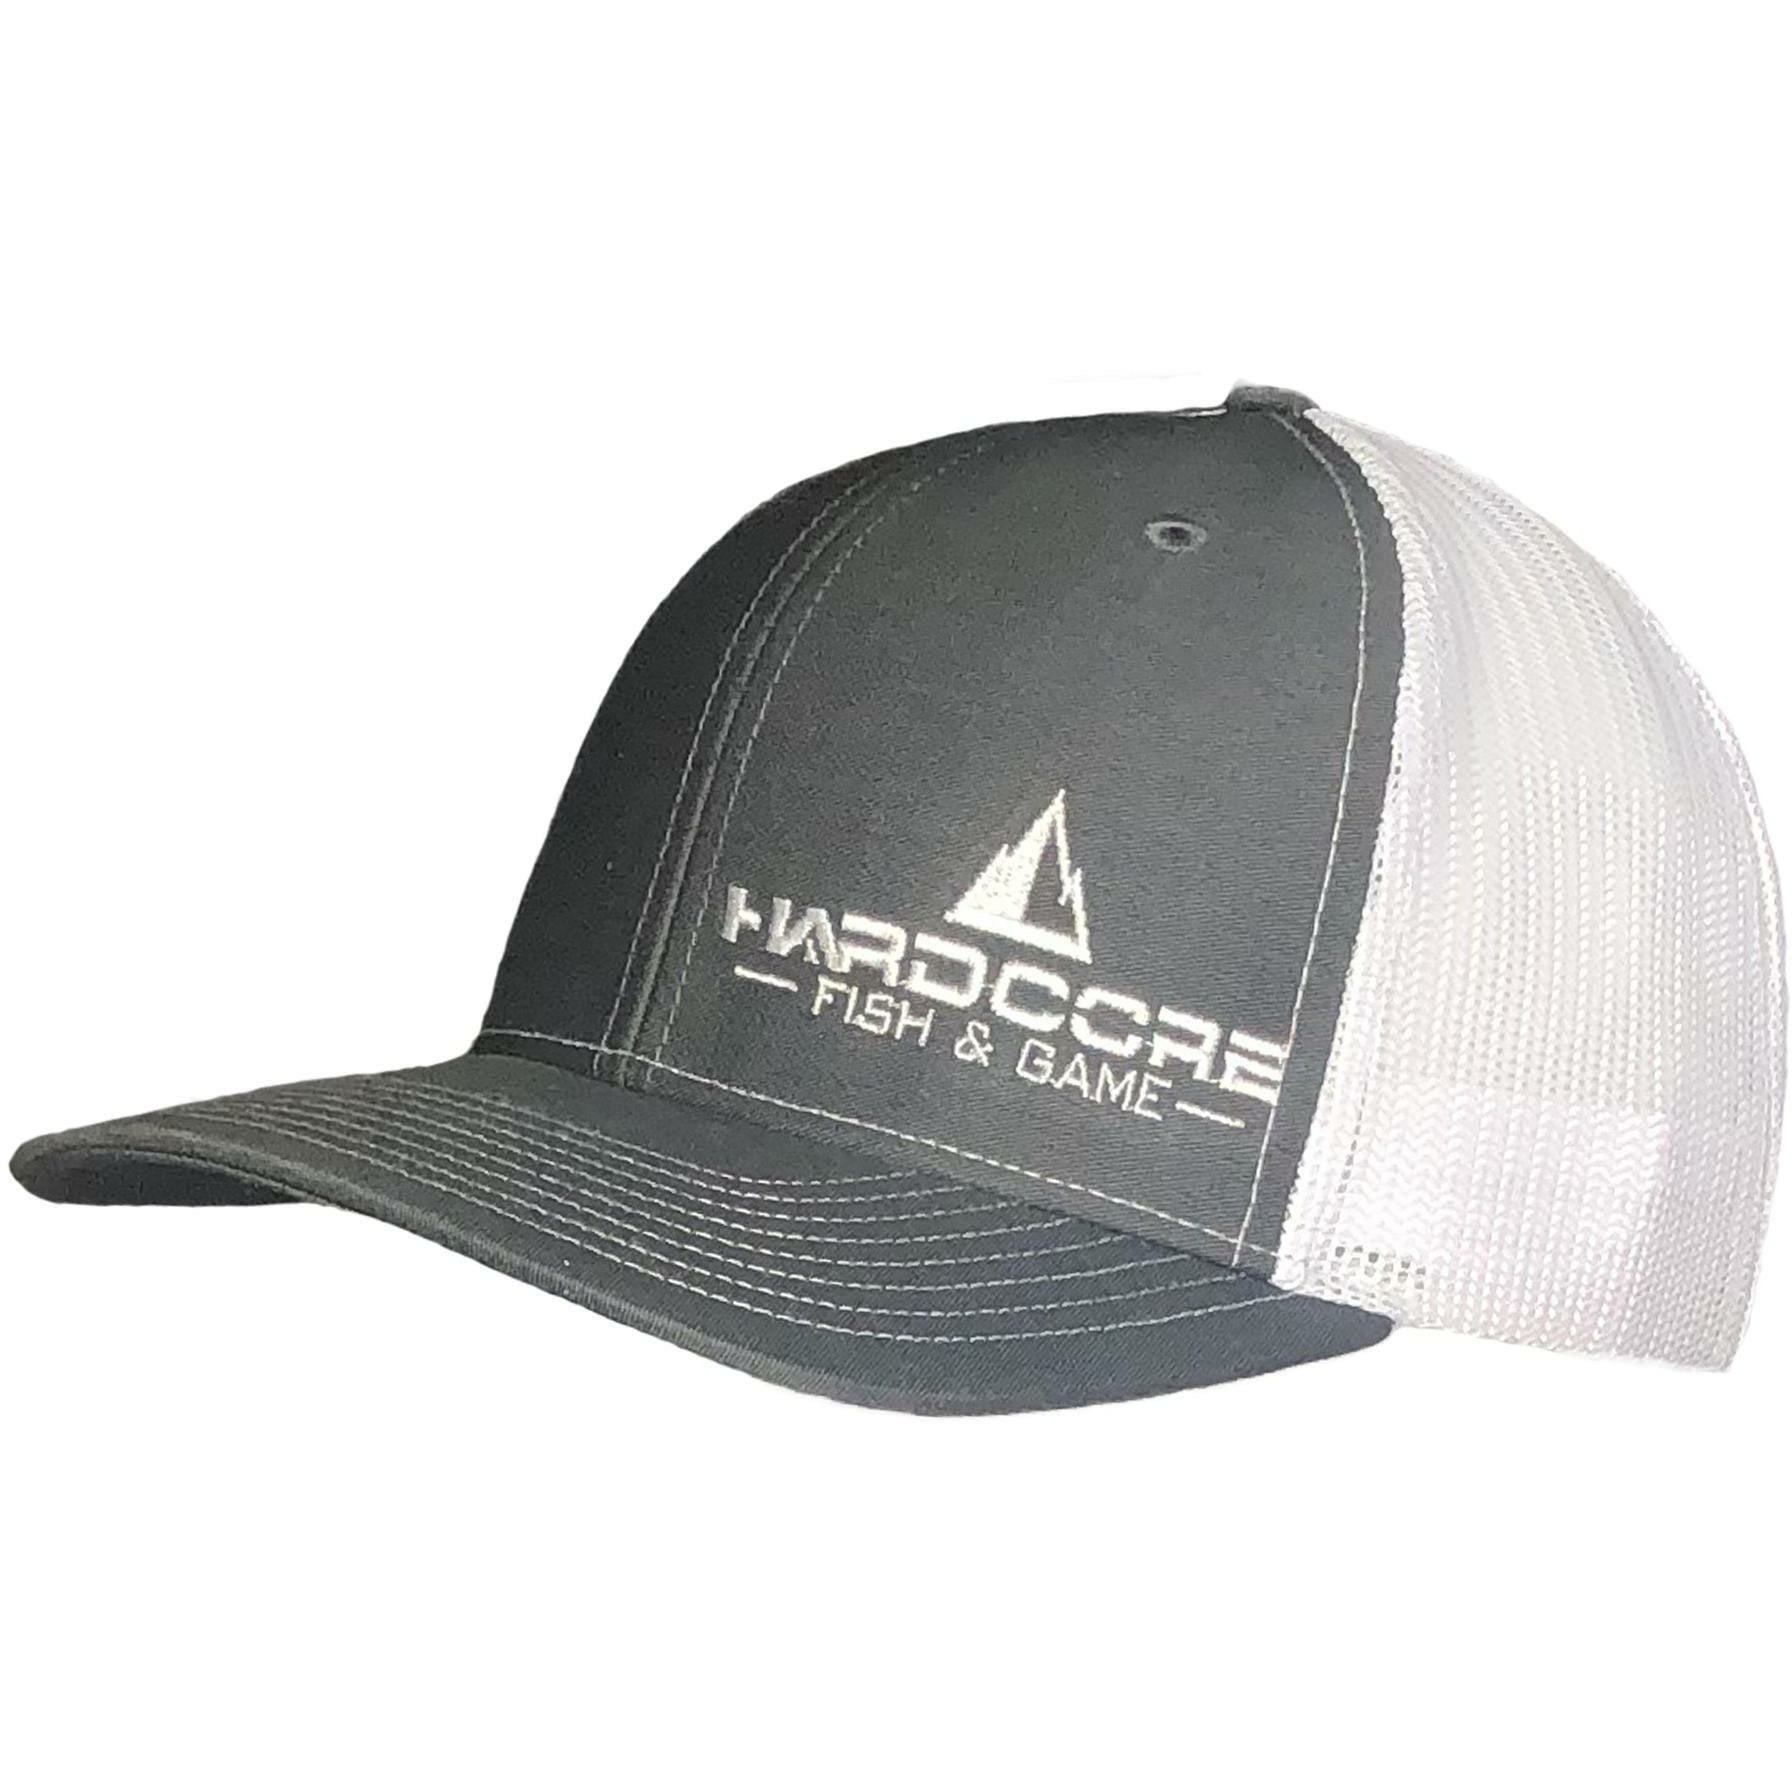 Hardcore Fish and Game Richardson Snapback Trucker Hat/ Embroidered Logo One Size / Dark Gray/White / Richardson 112